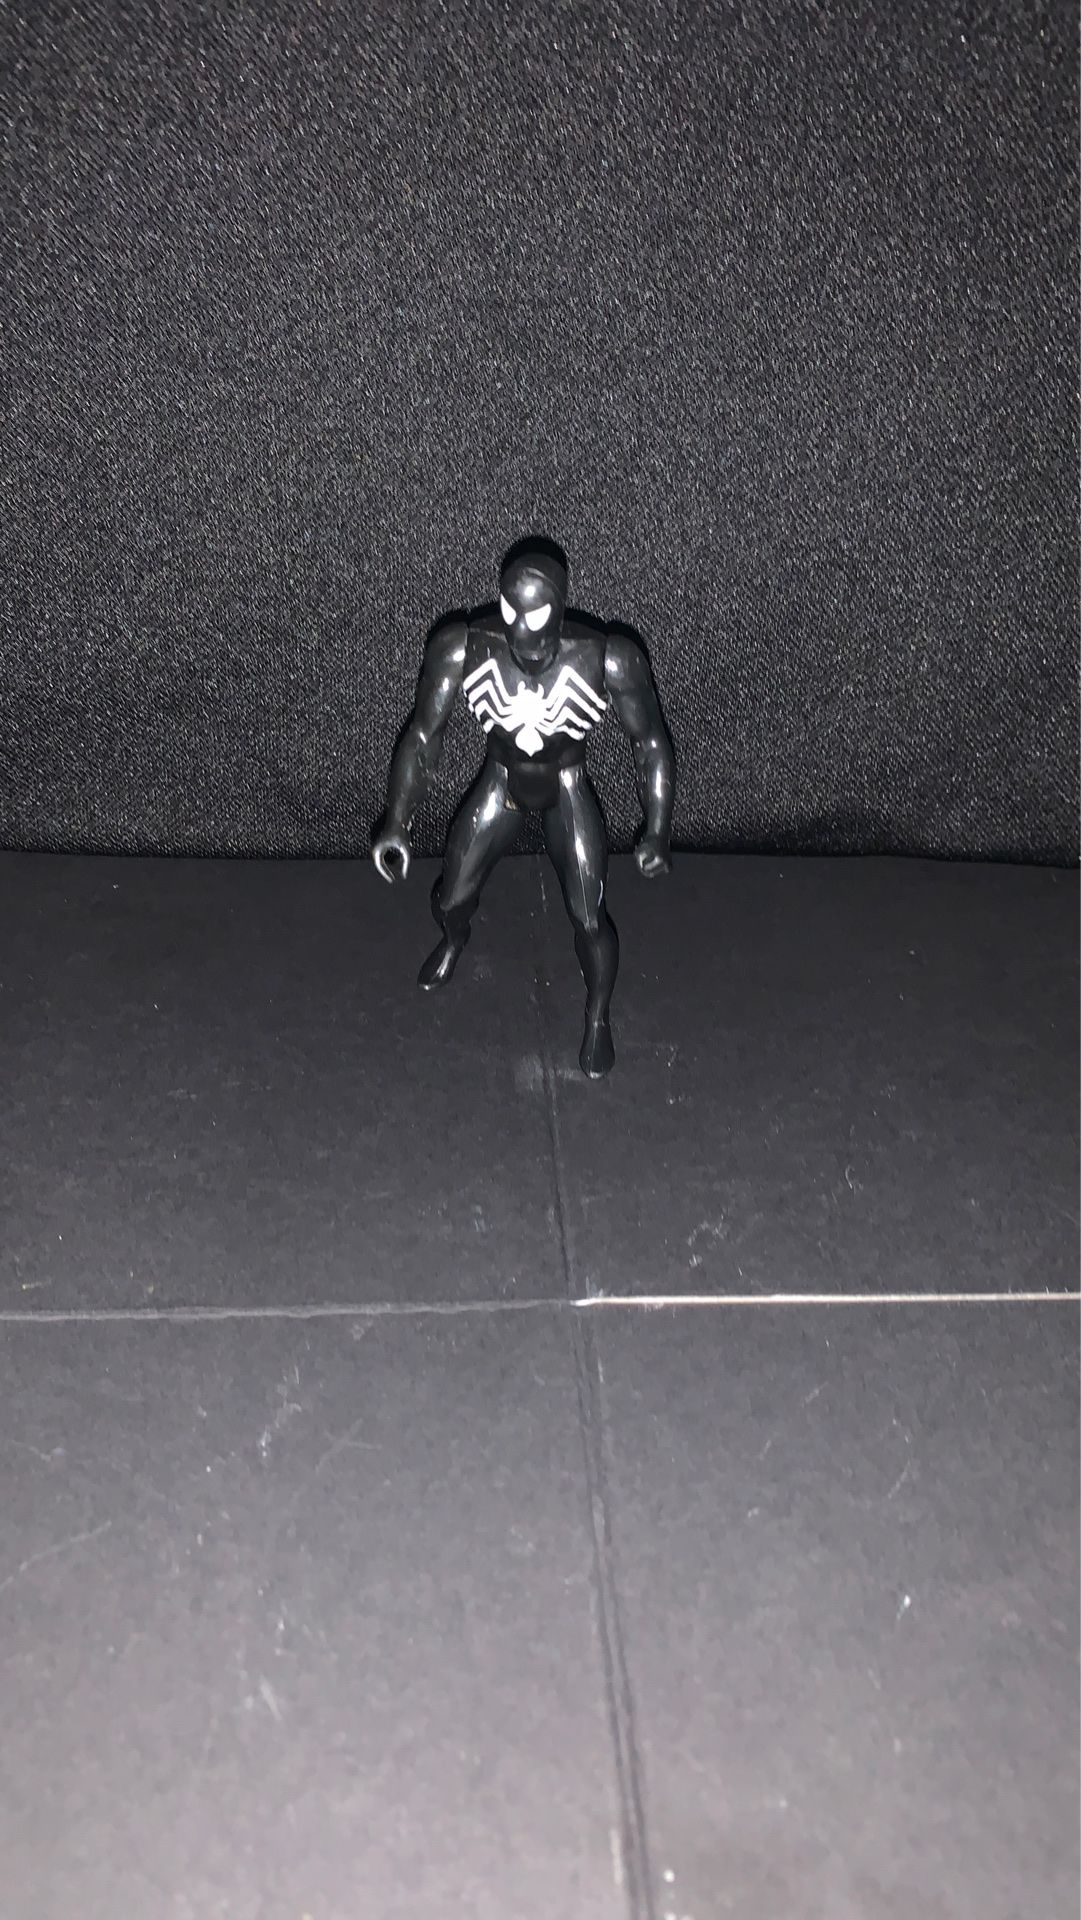 1984 Marvel Venom Figure